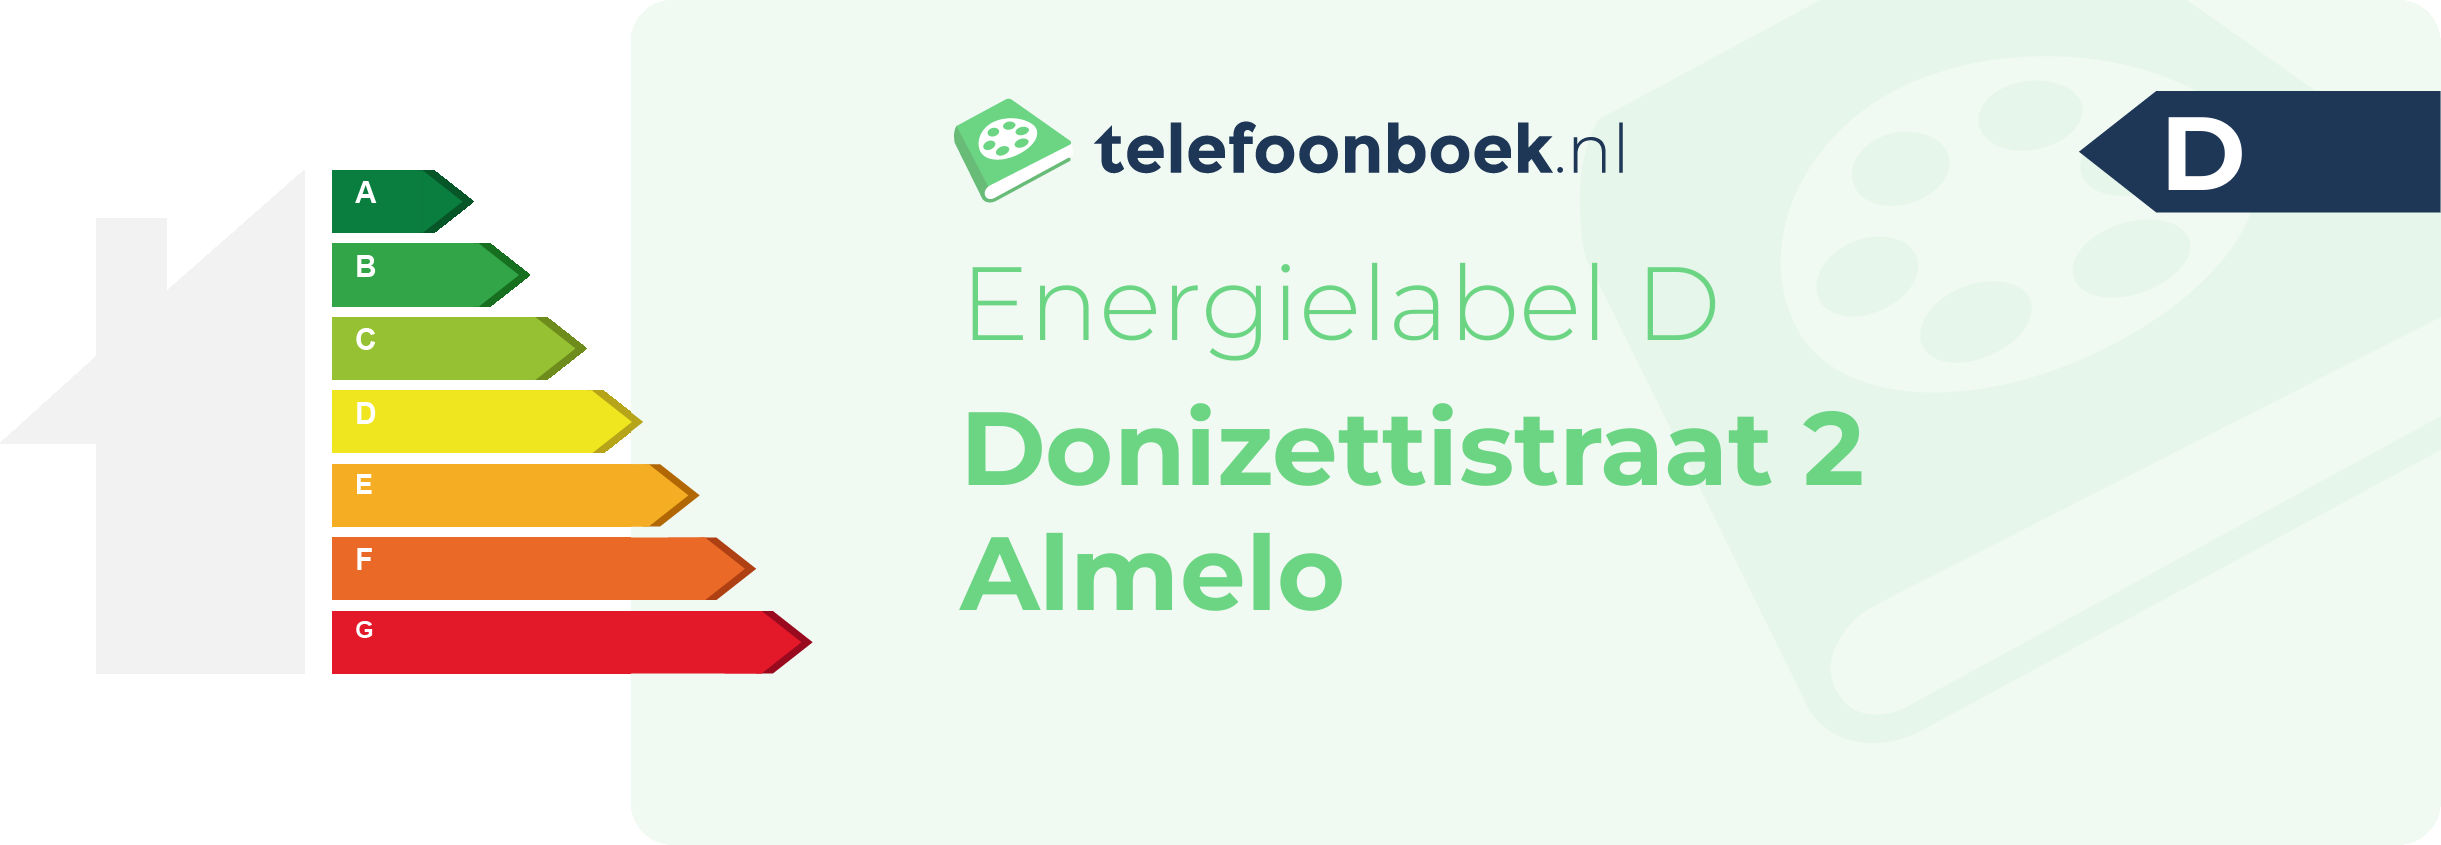 Energielabel Donizettistraat 2 Almelo